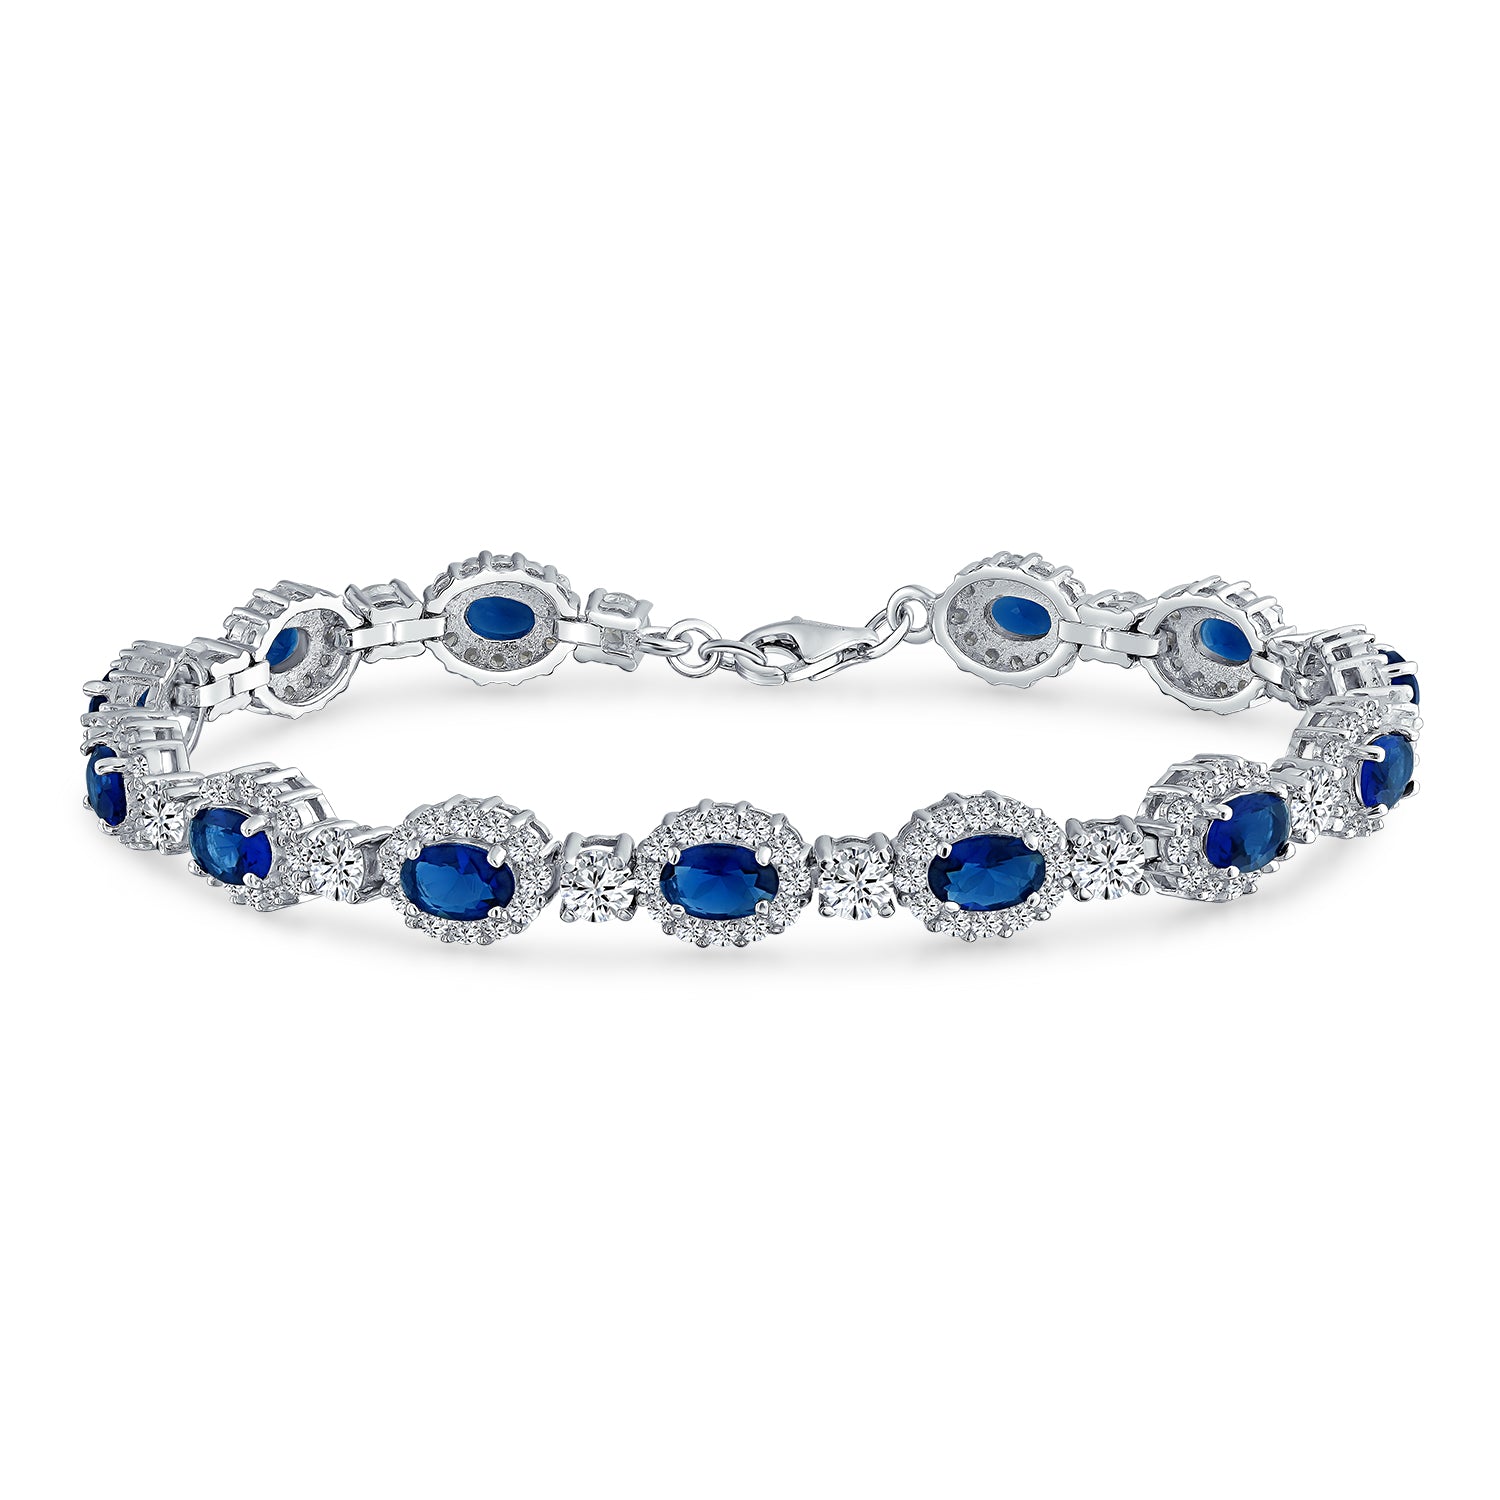 Vintage Style Halo Oval Blue CZ Imitation Sapphire Bracelet .925 Silve ...